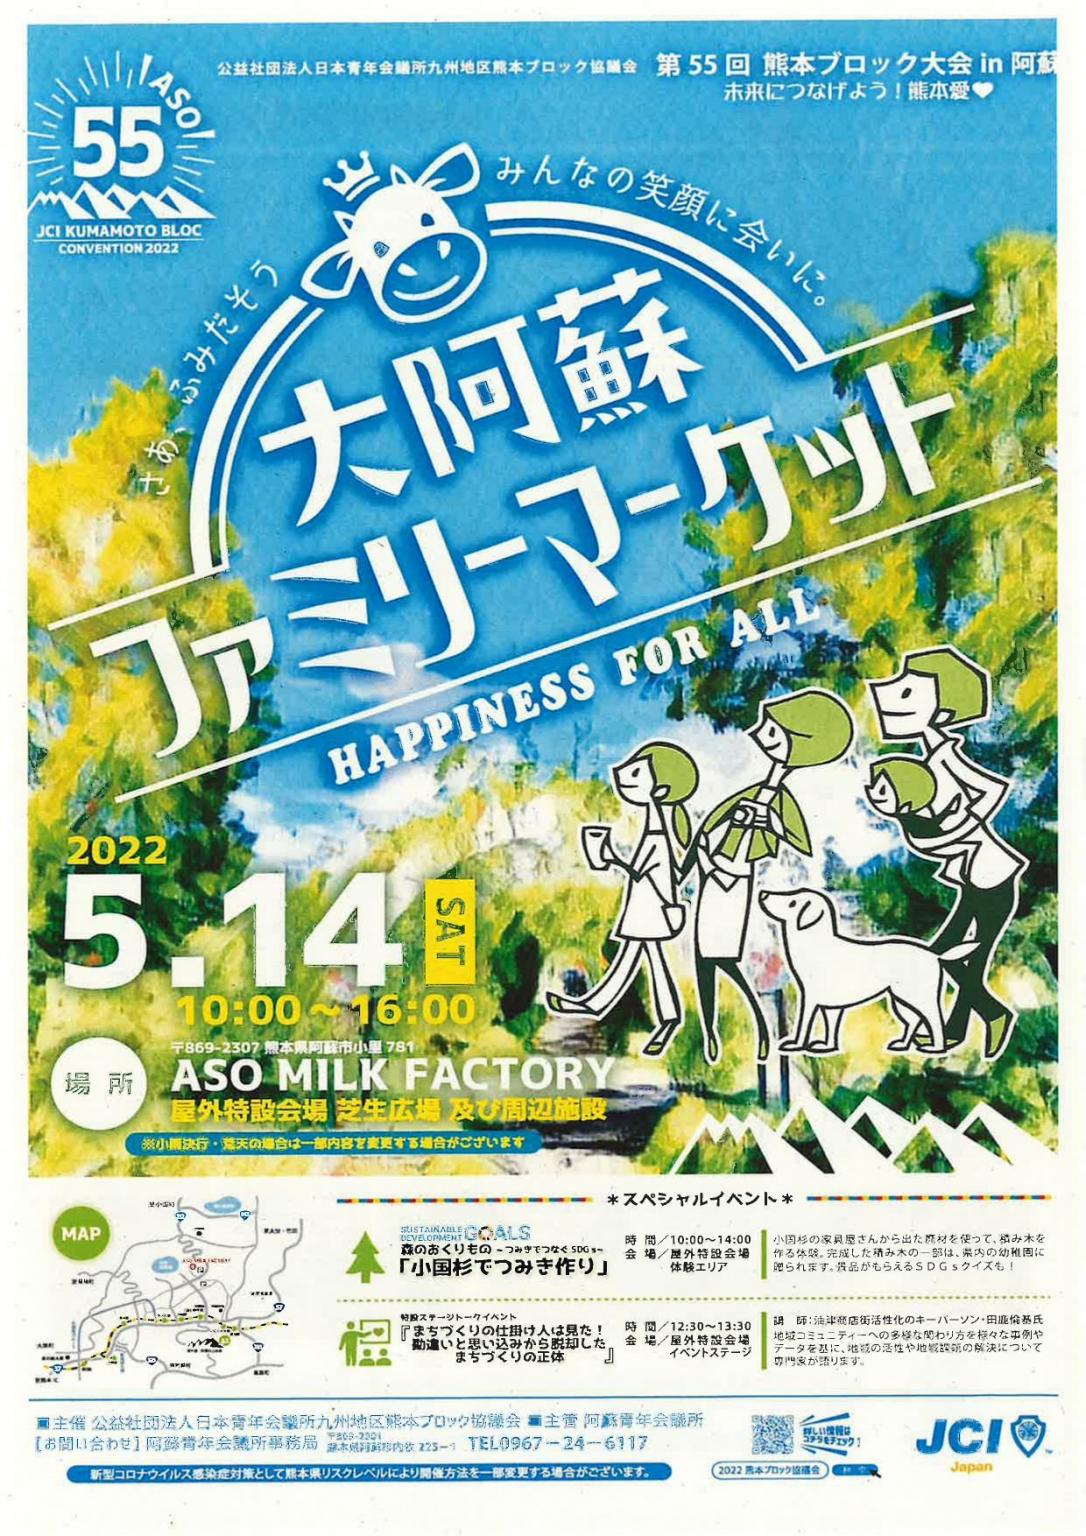 大阿蘇ファミリーマーケット イベント 公式 熊本県観光サイト もっと もーっと くまもっと